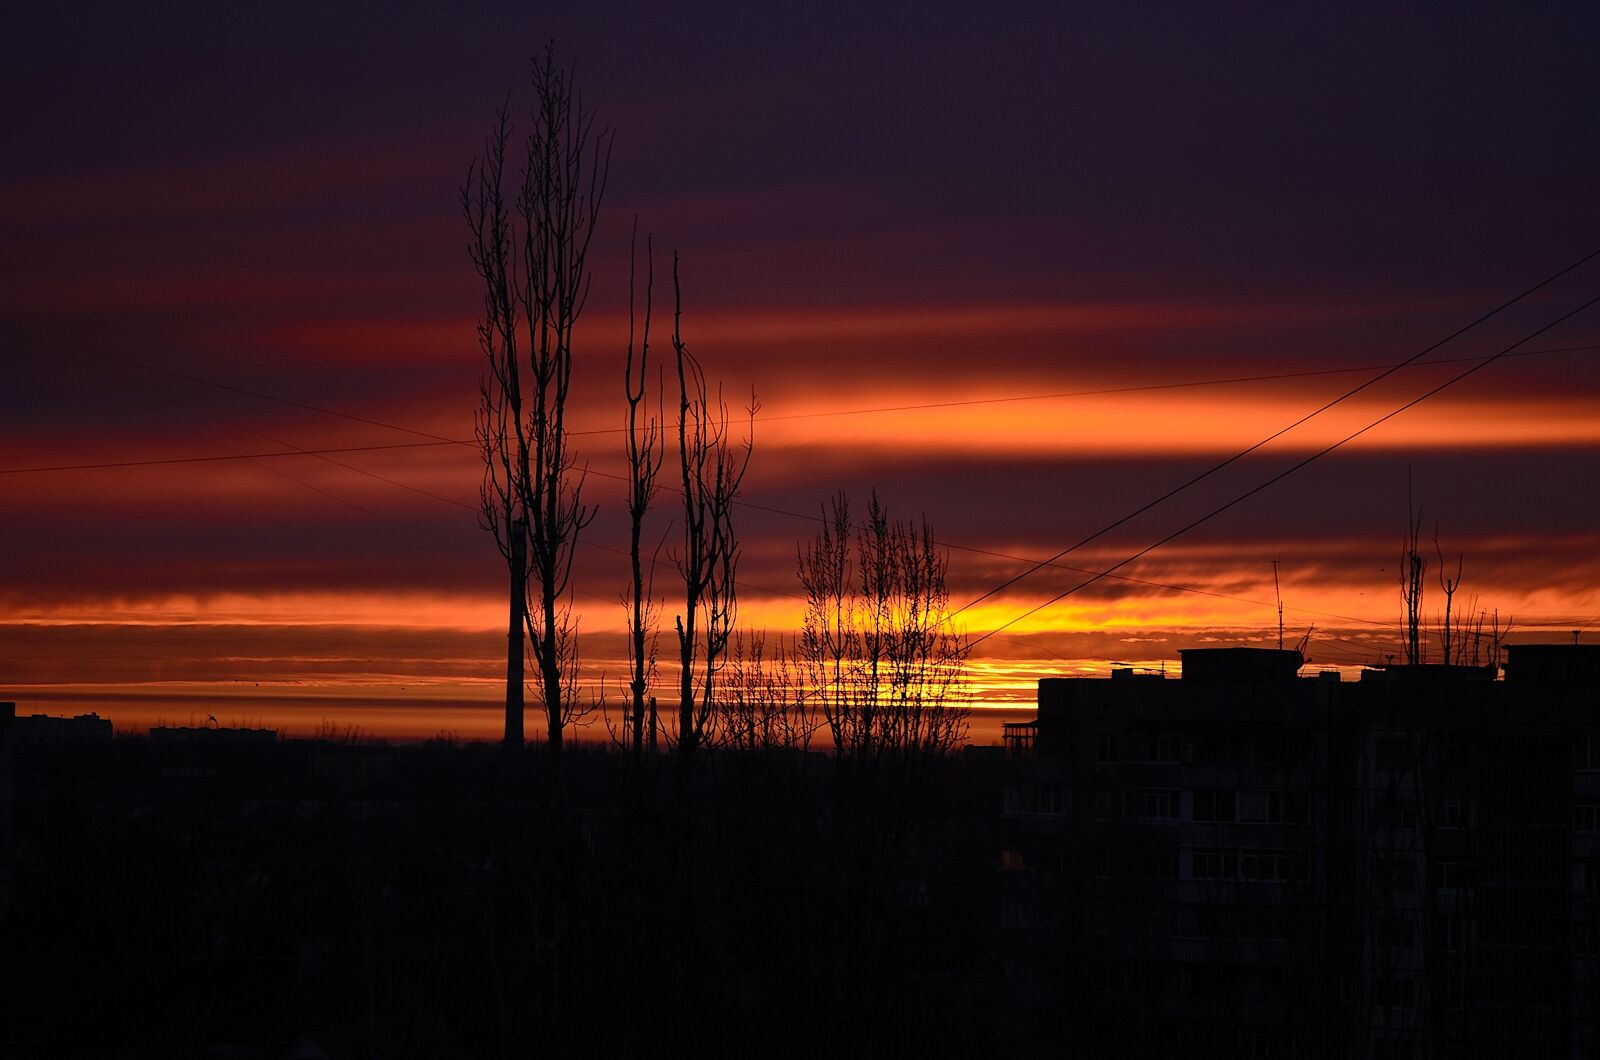 Nikon D5100 sample photo. Sky, sunset, evening photography